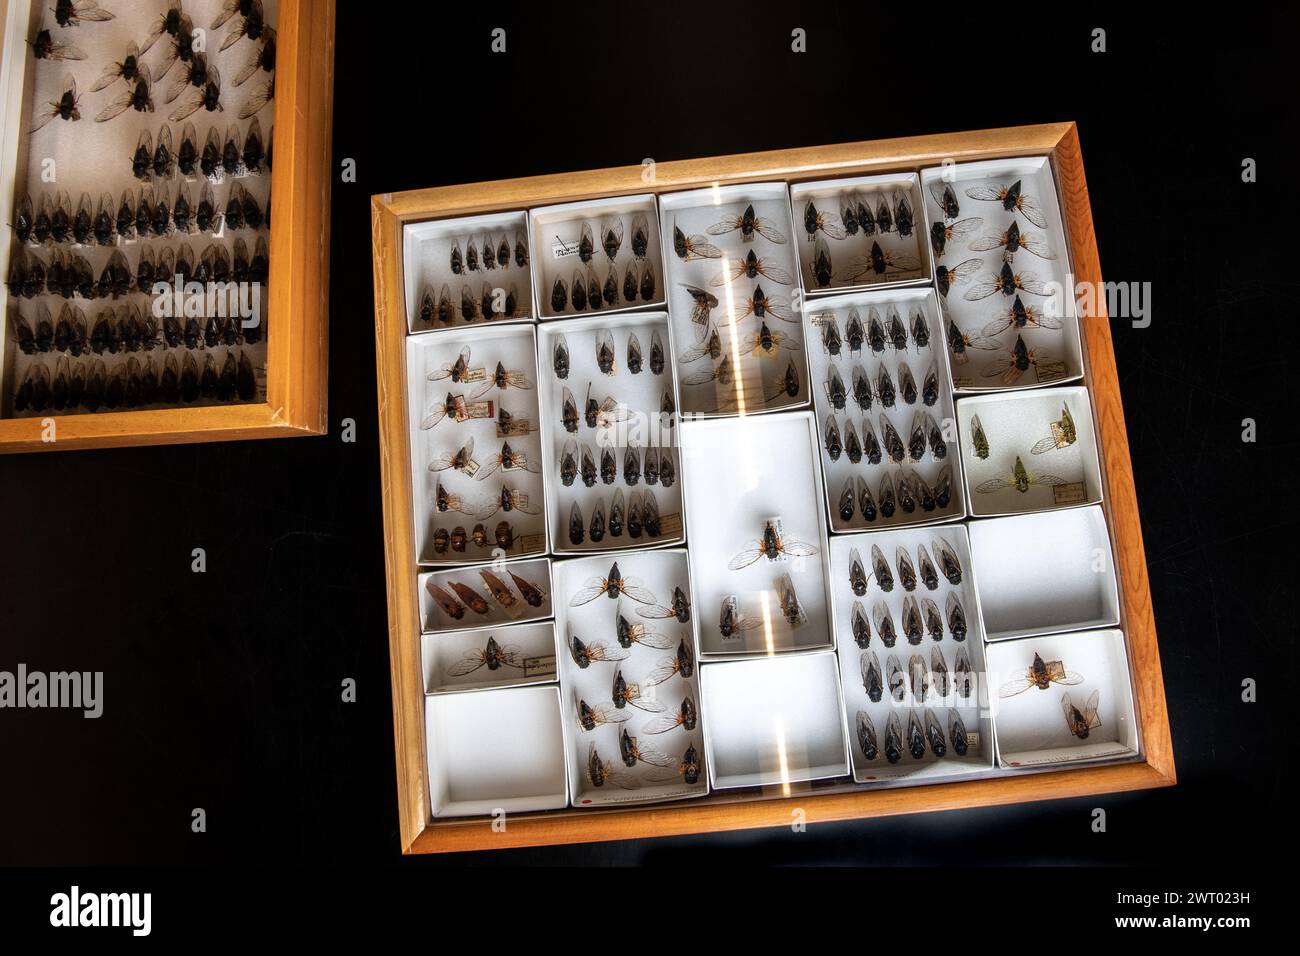 Viele gefiederte Zikaden in einem Museumskoffer zeigen die Vielfalt der Zikaden Nordamerikas. Viele Insektenarten sind vertreten. Stockfoto